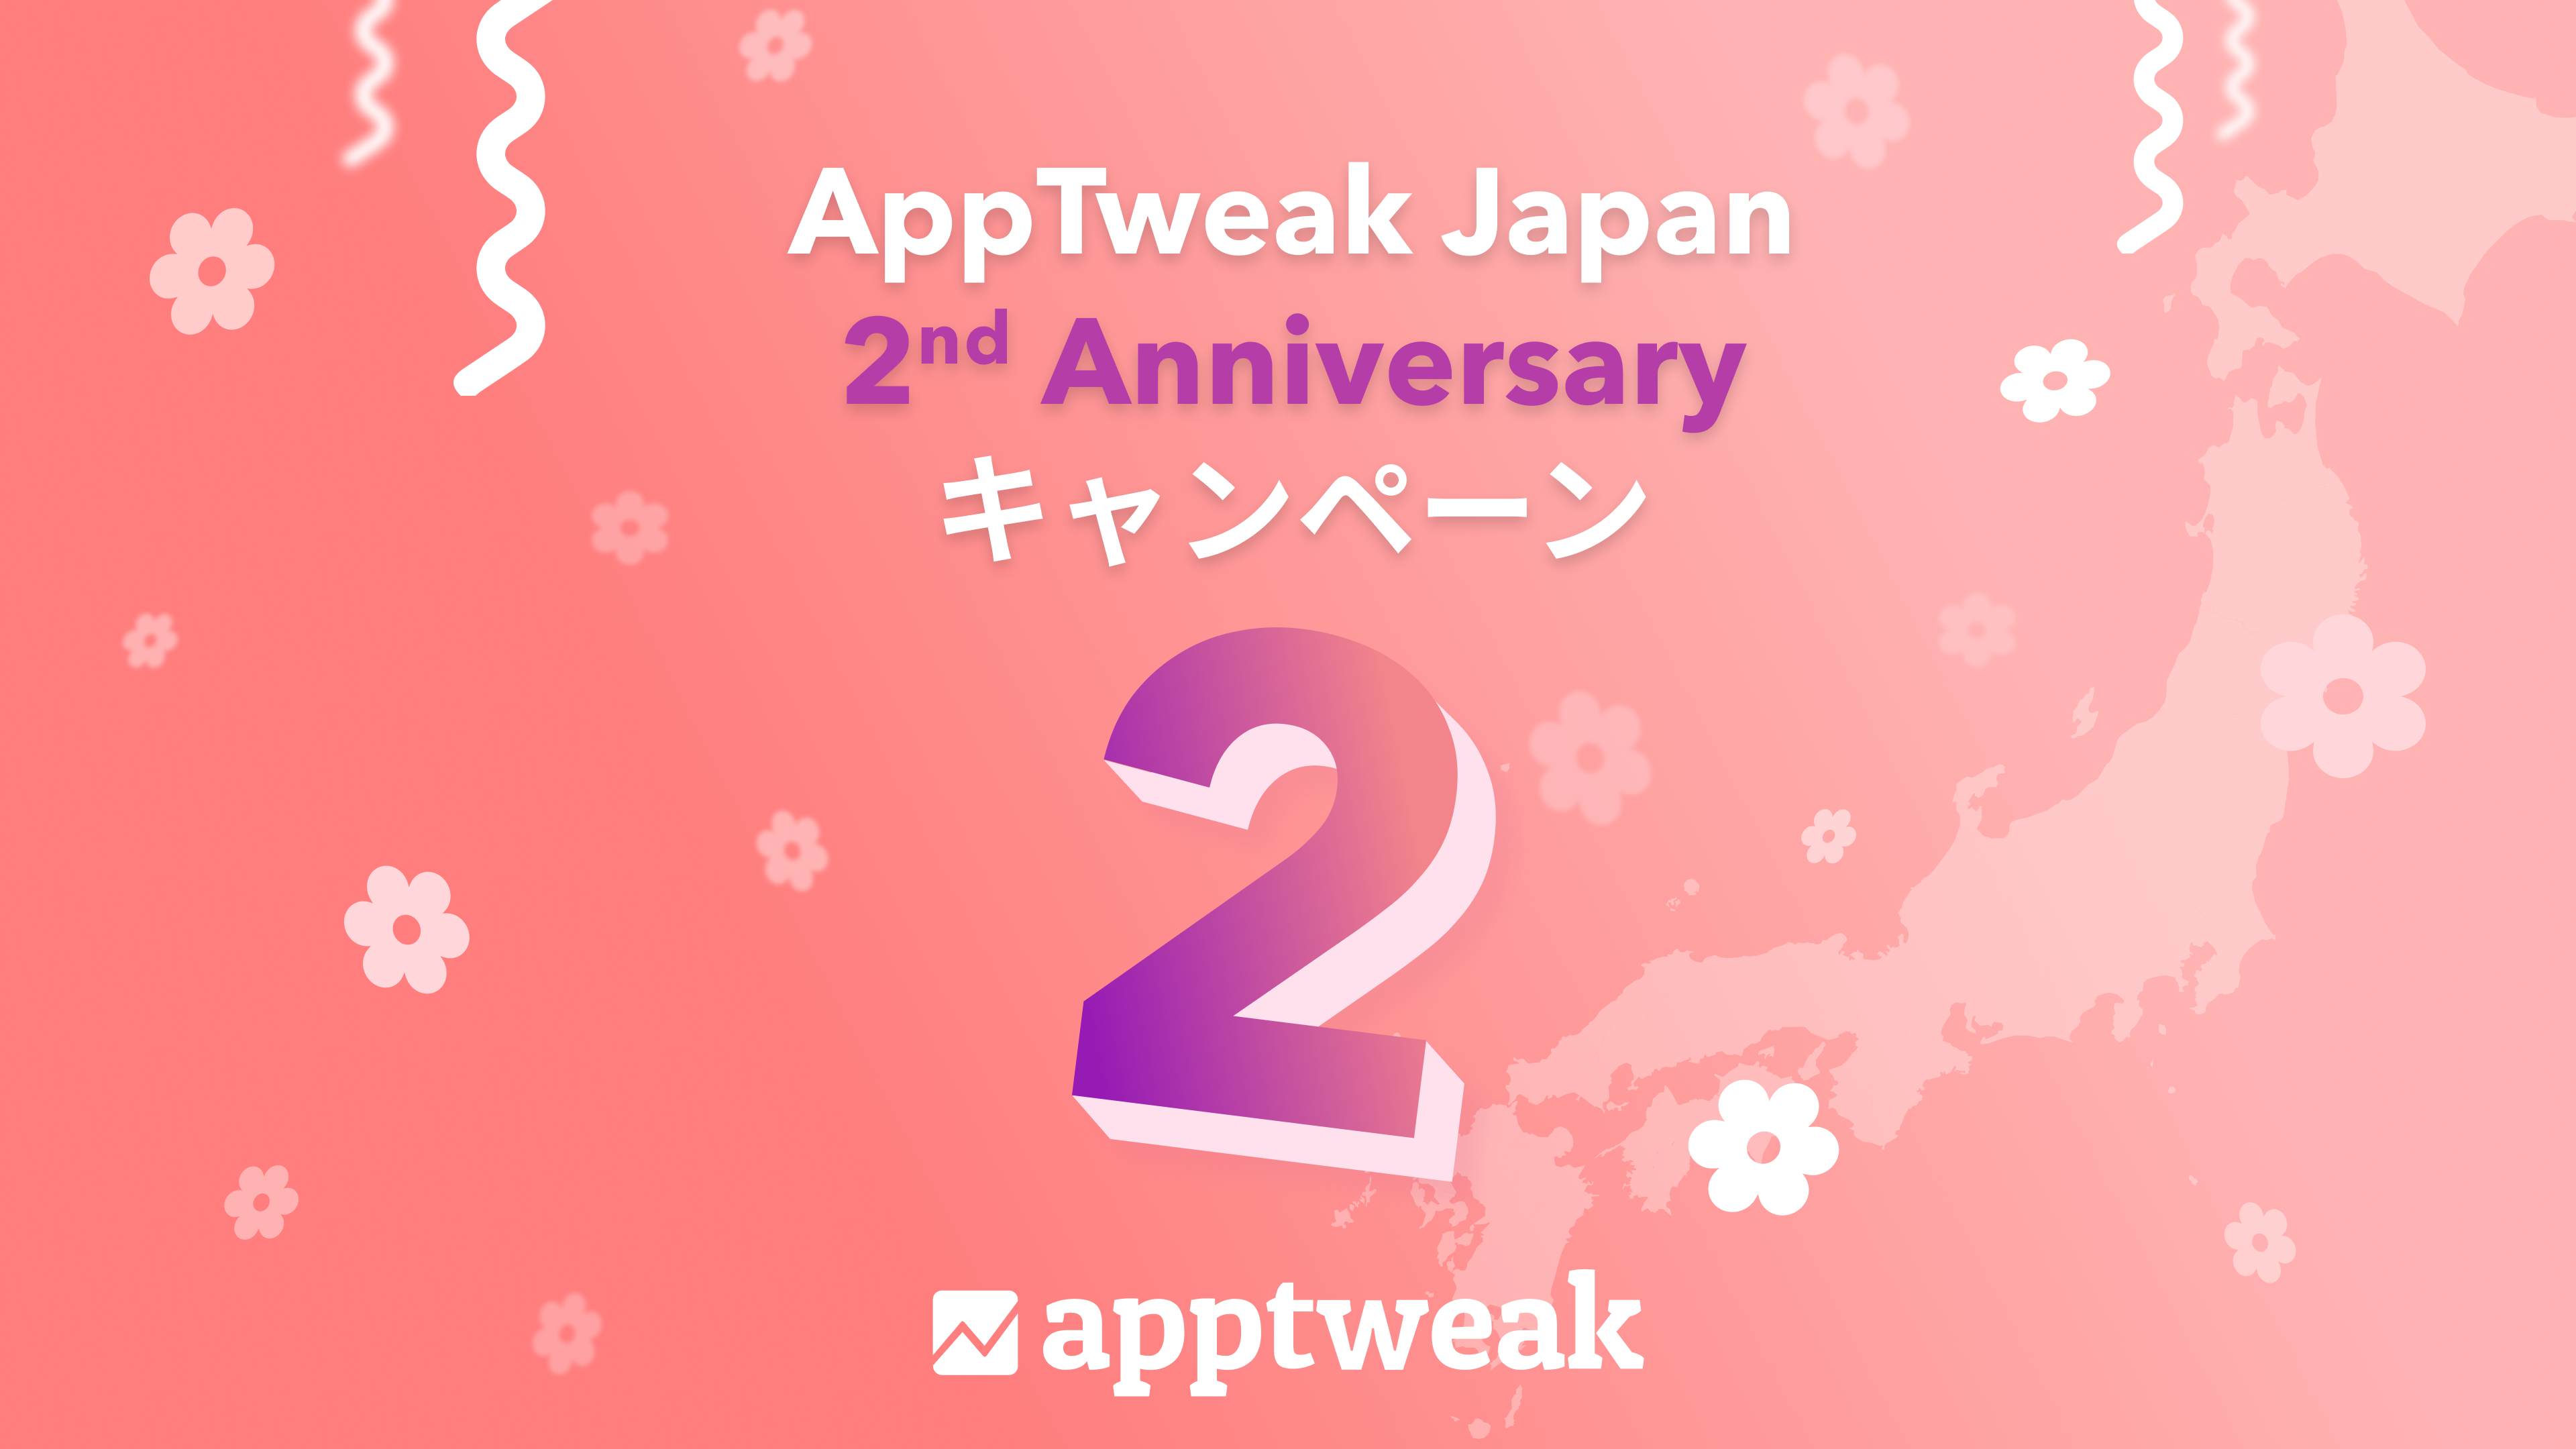 【祝！日本上陸2周年】No. 1 ASO対策ツール『AppTweak』、わずか2年で約565%の成長率を達成。